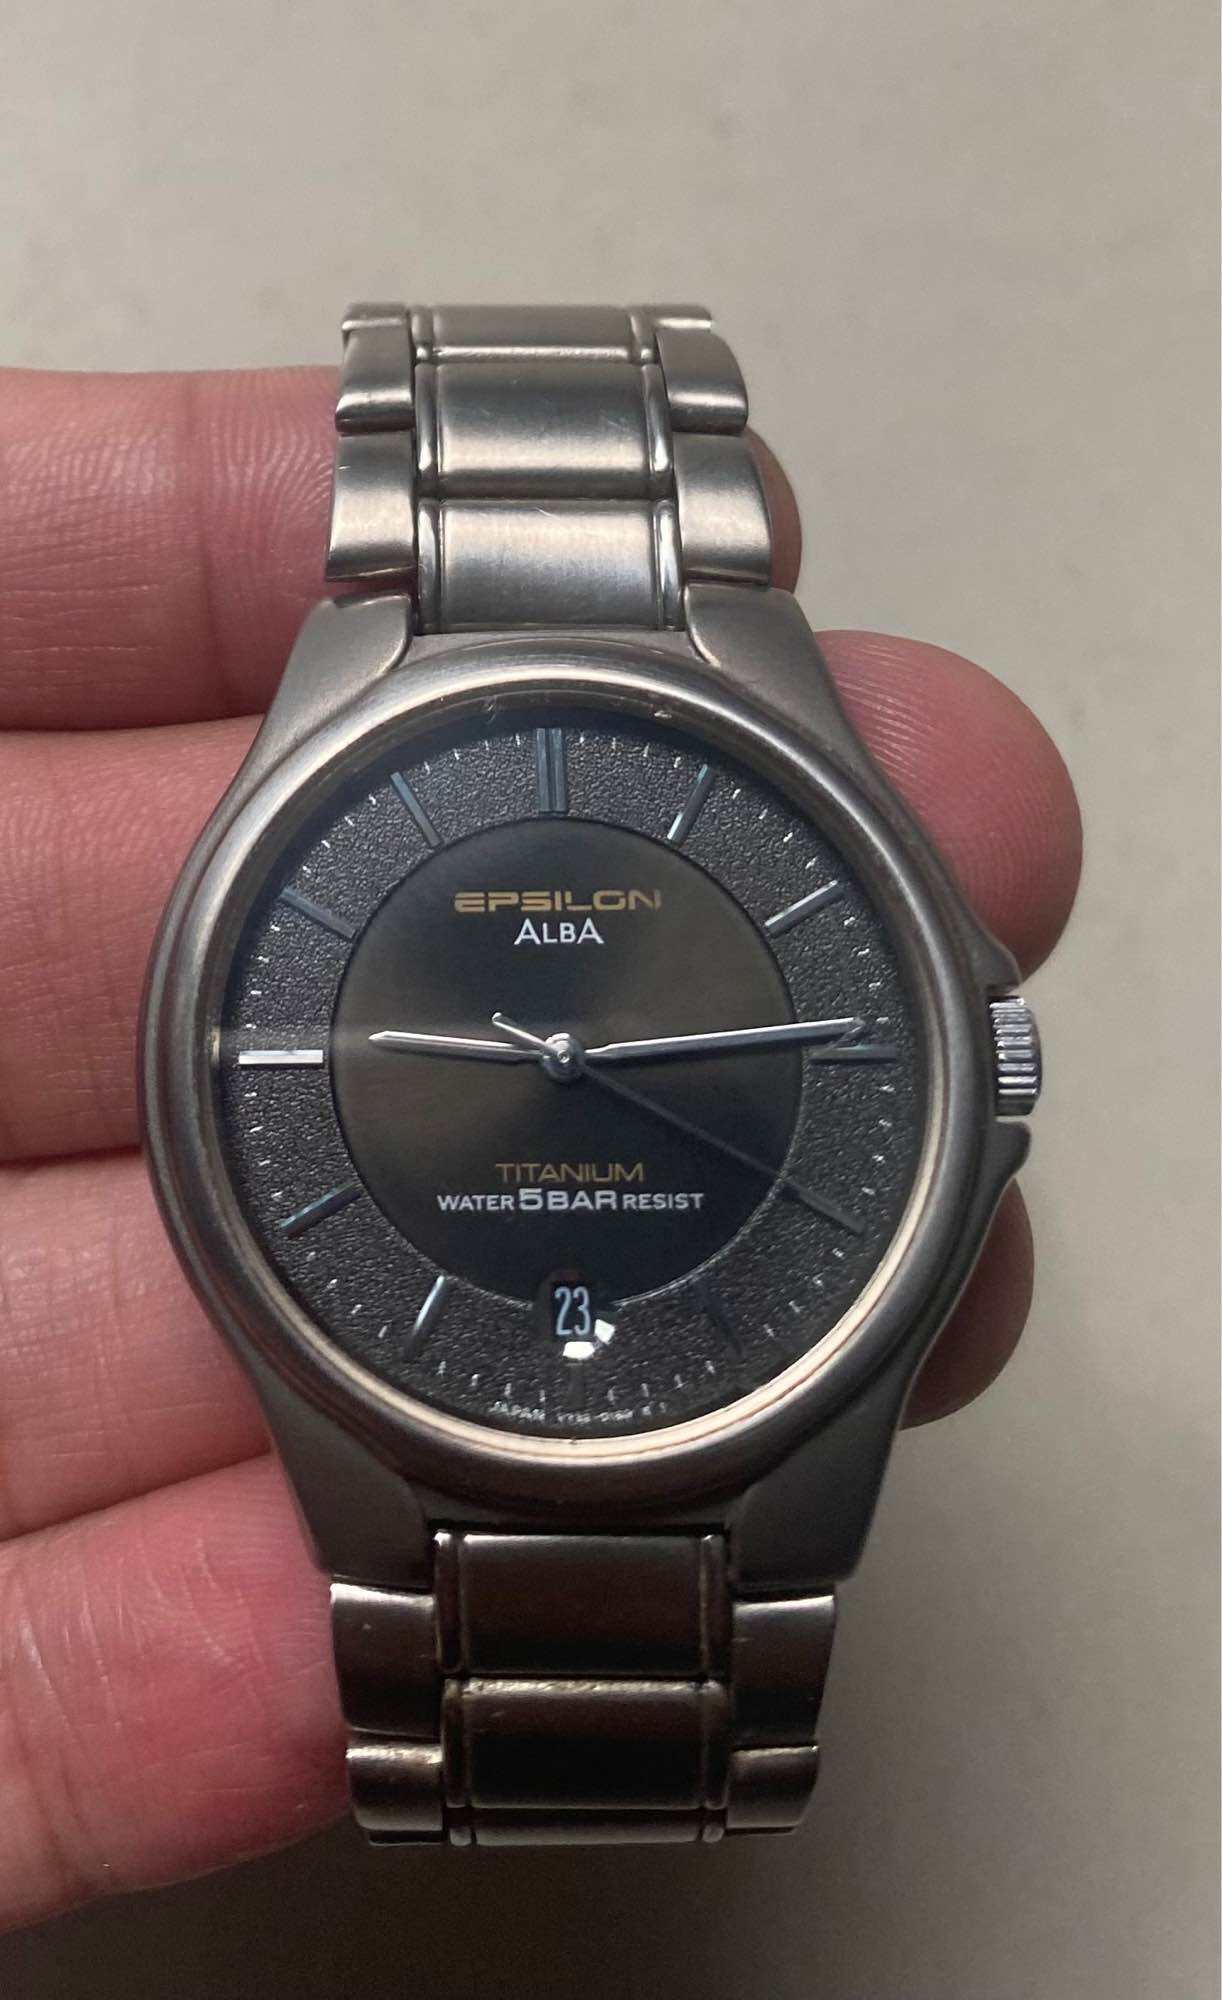 Đánh giá đồng hồ Alba từ A-Z: Xuất xứ, giá bán, nhược điểm